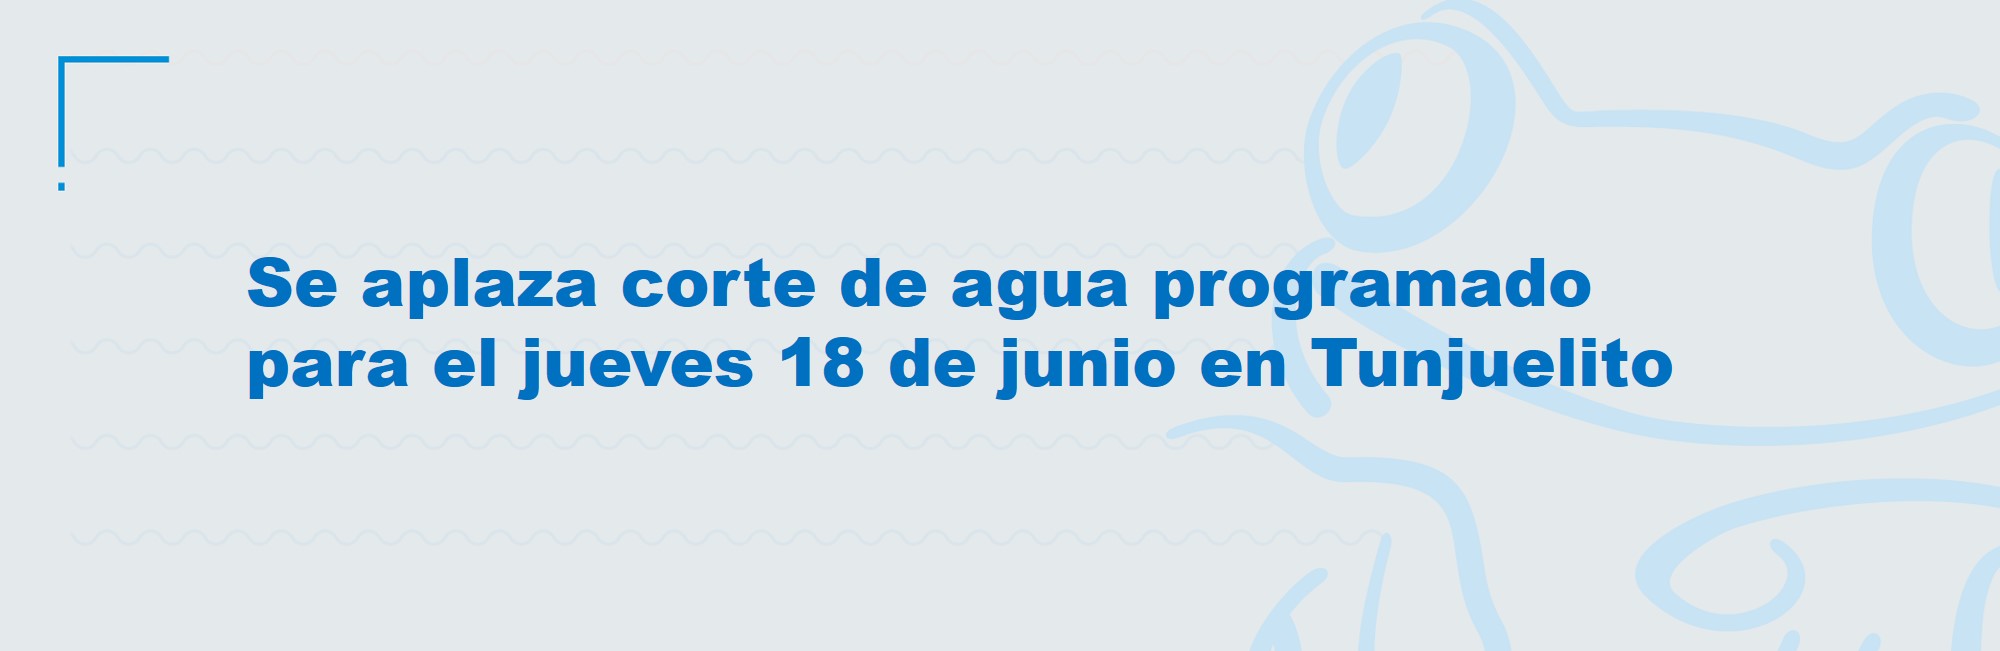 Se aplaza corte de agua programado para el jueves 18 de junio en Tunjuelito